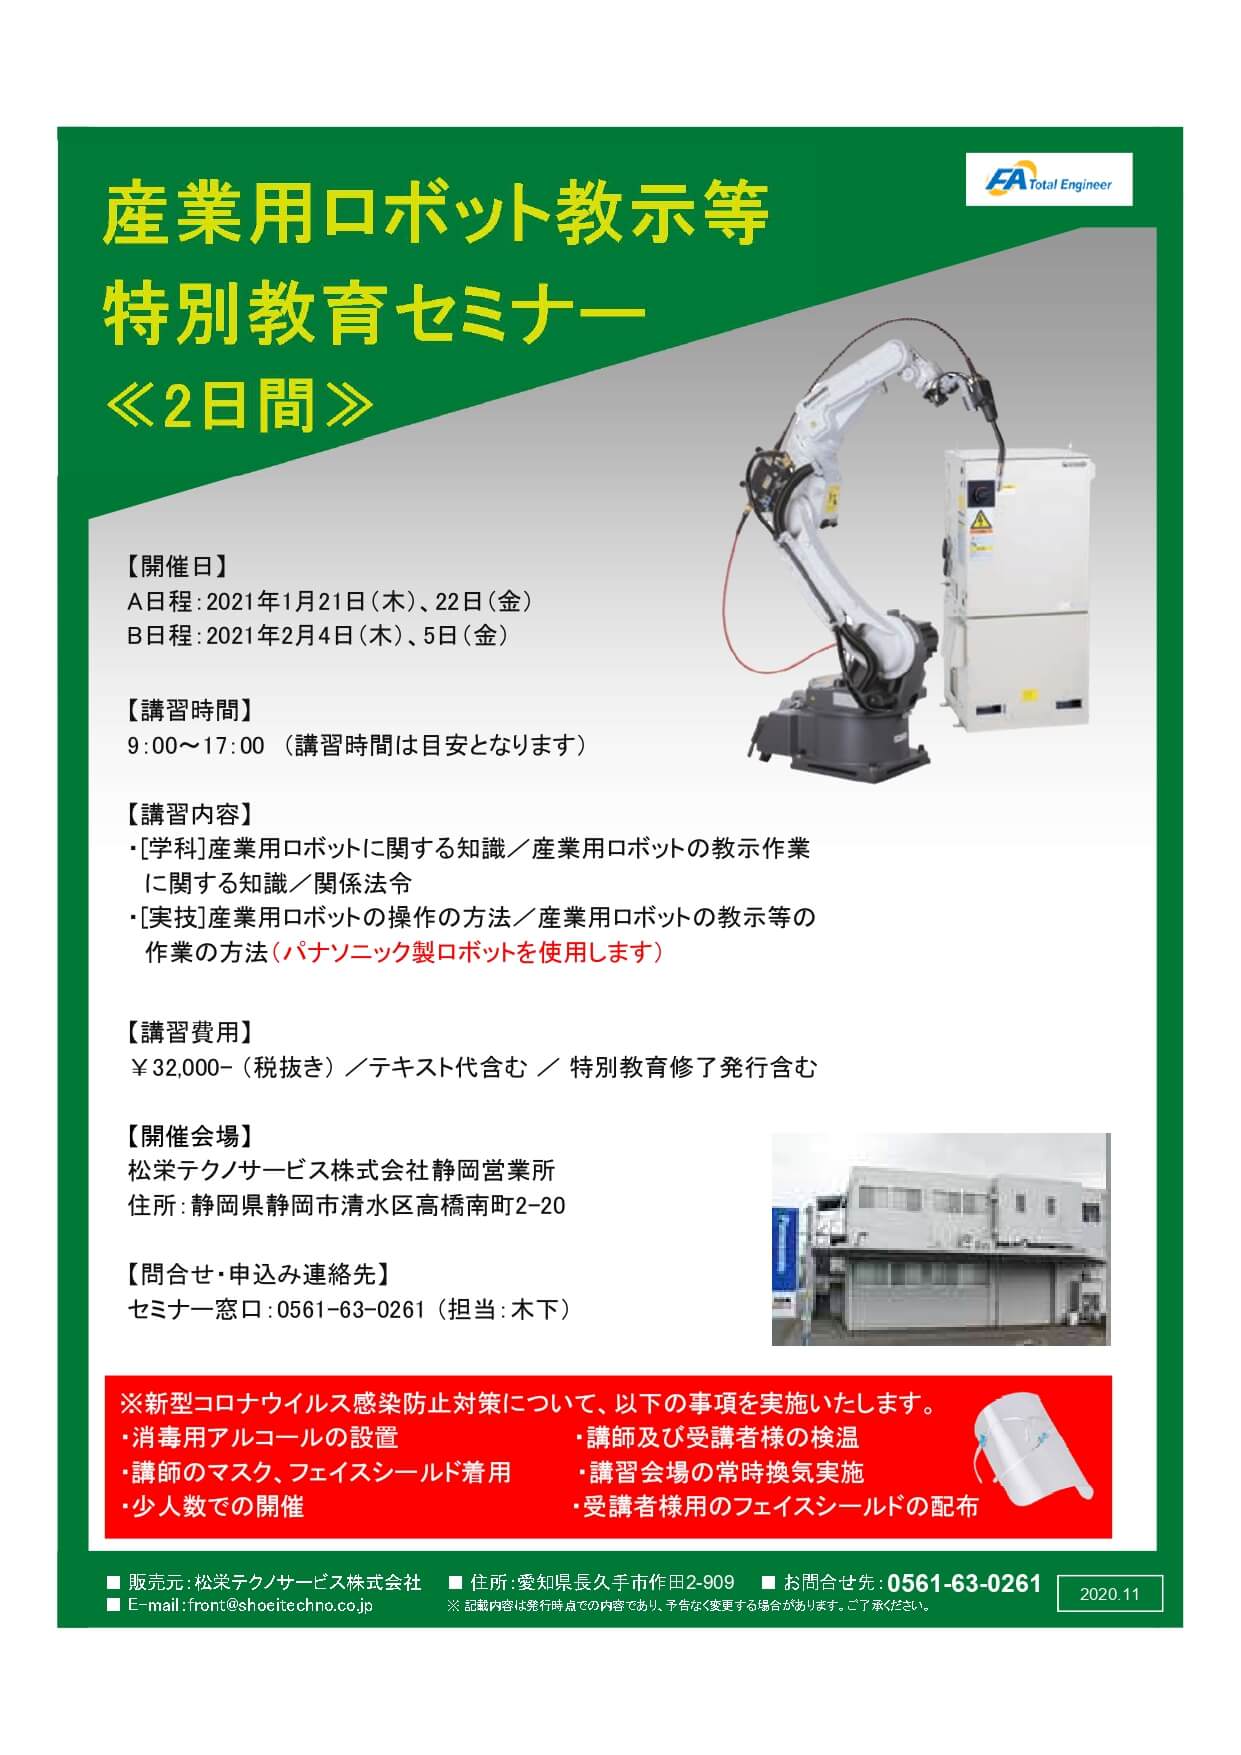 【終了しました】産業用ロボット特別教育（教示等）静岡会場開催のお知らせ